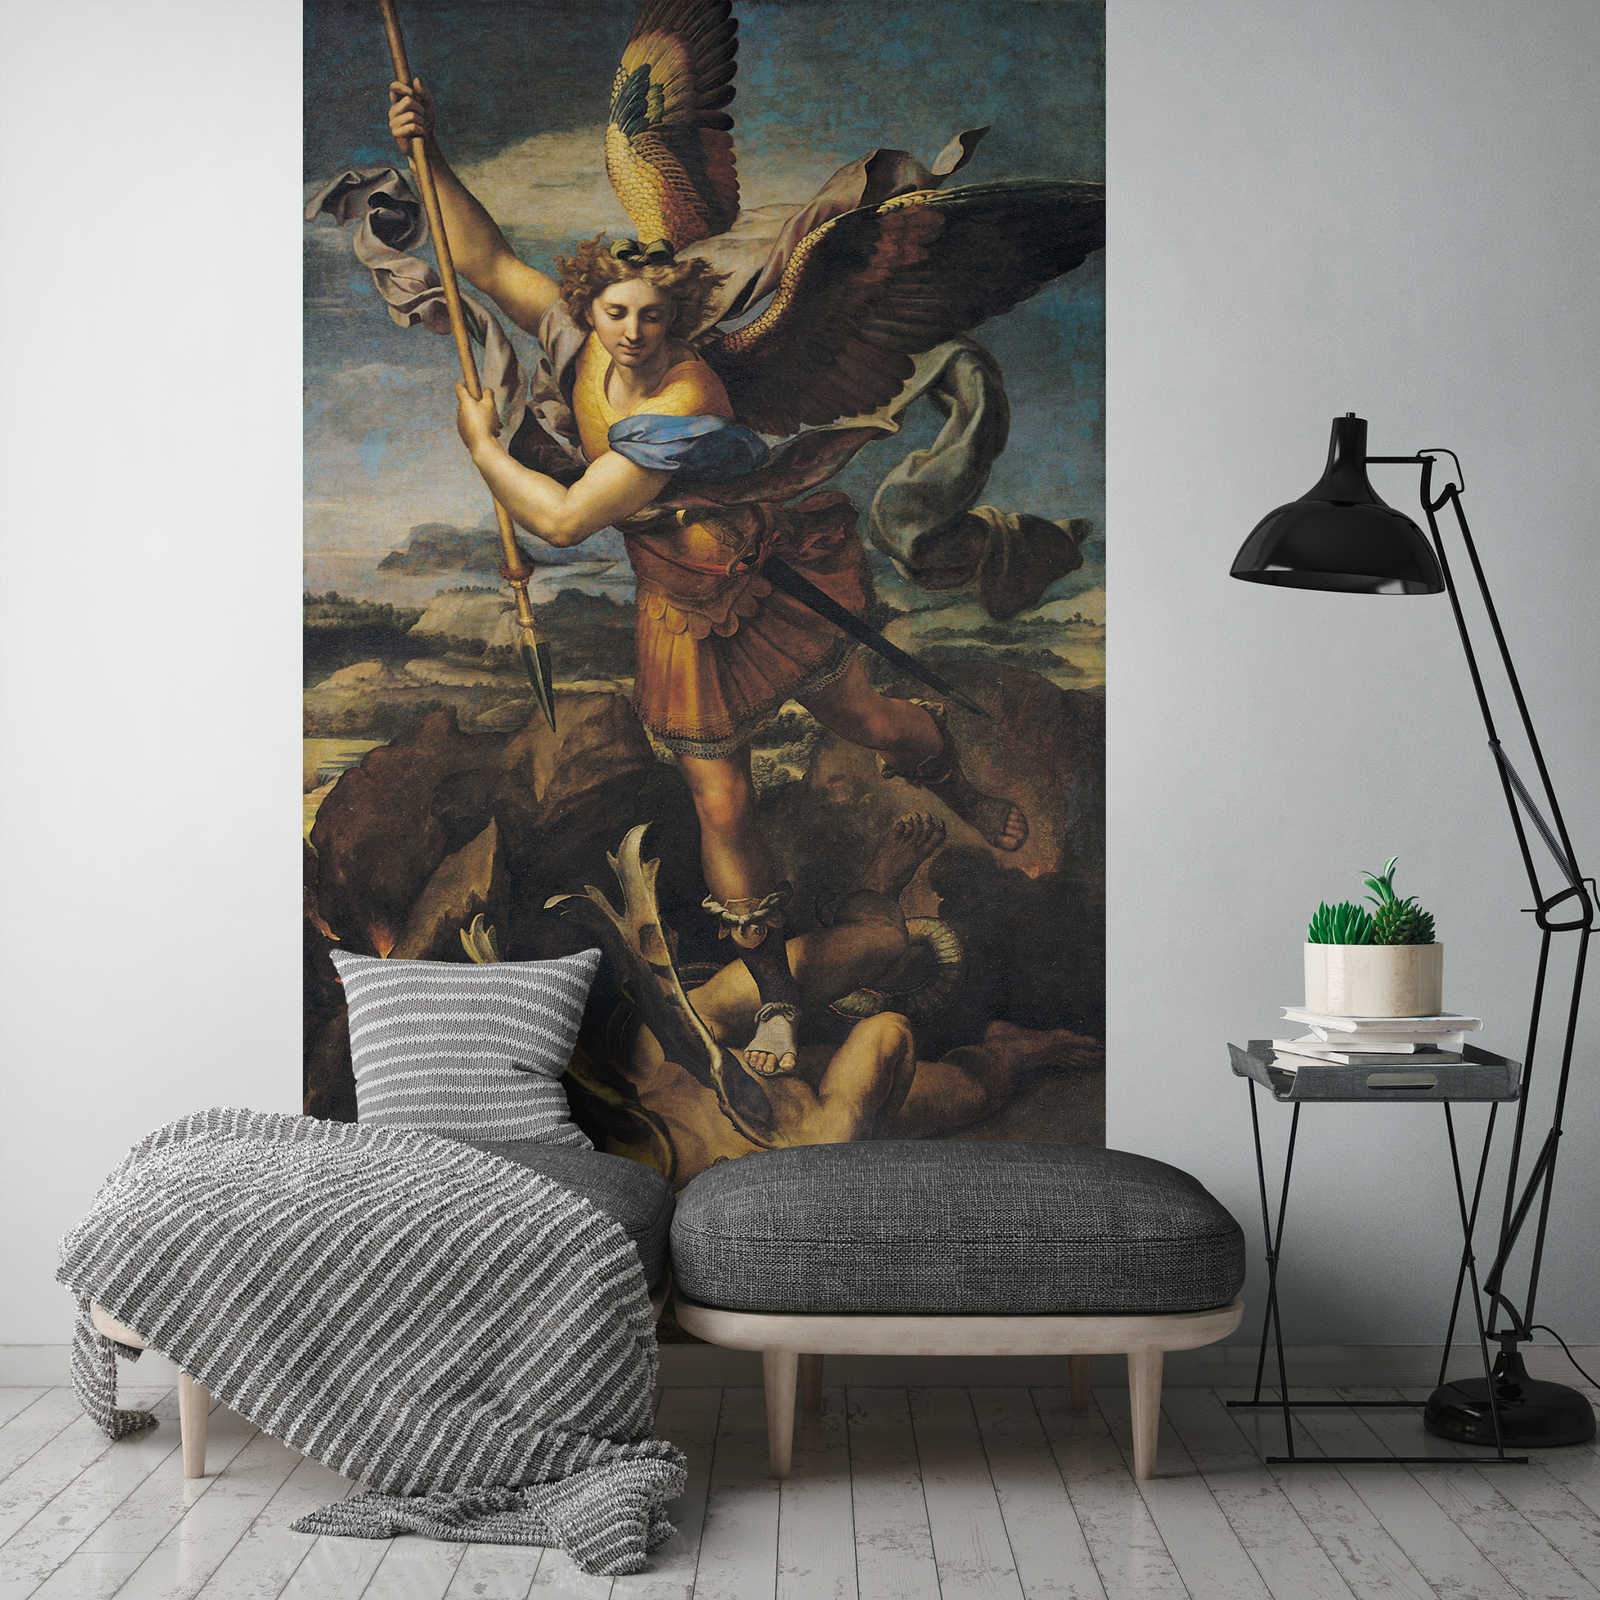             Papier peint panoramique "Saint Michel tuant le démon" par Raphaël
        